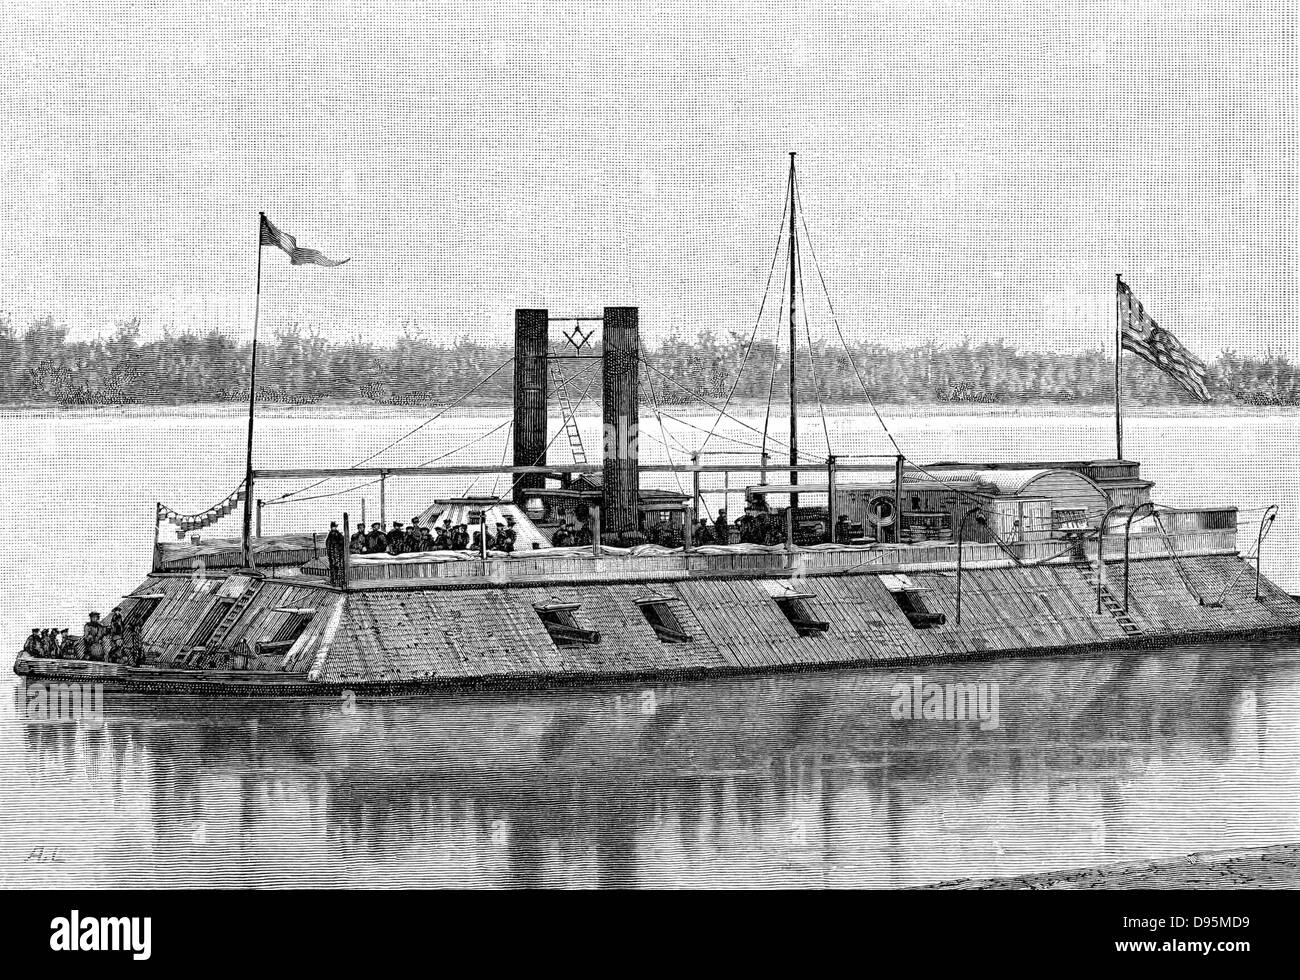 St Louis', James Buchanan Eads' premiers employés par la canonnière cuirassé unioniste (nord) côte dans American Civil War 1861-1865. Coulé par torpedo en 1863. La gravure. Banque D'Images